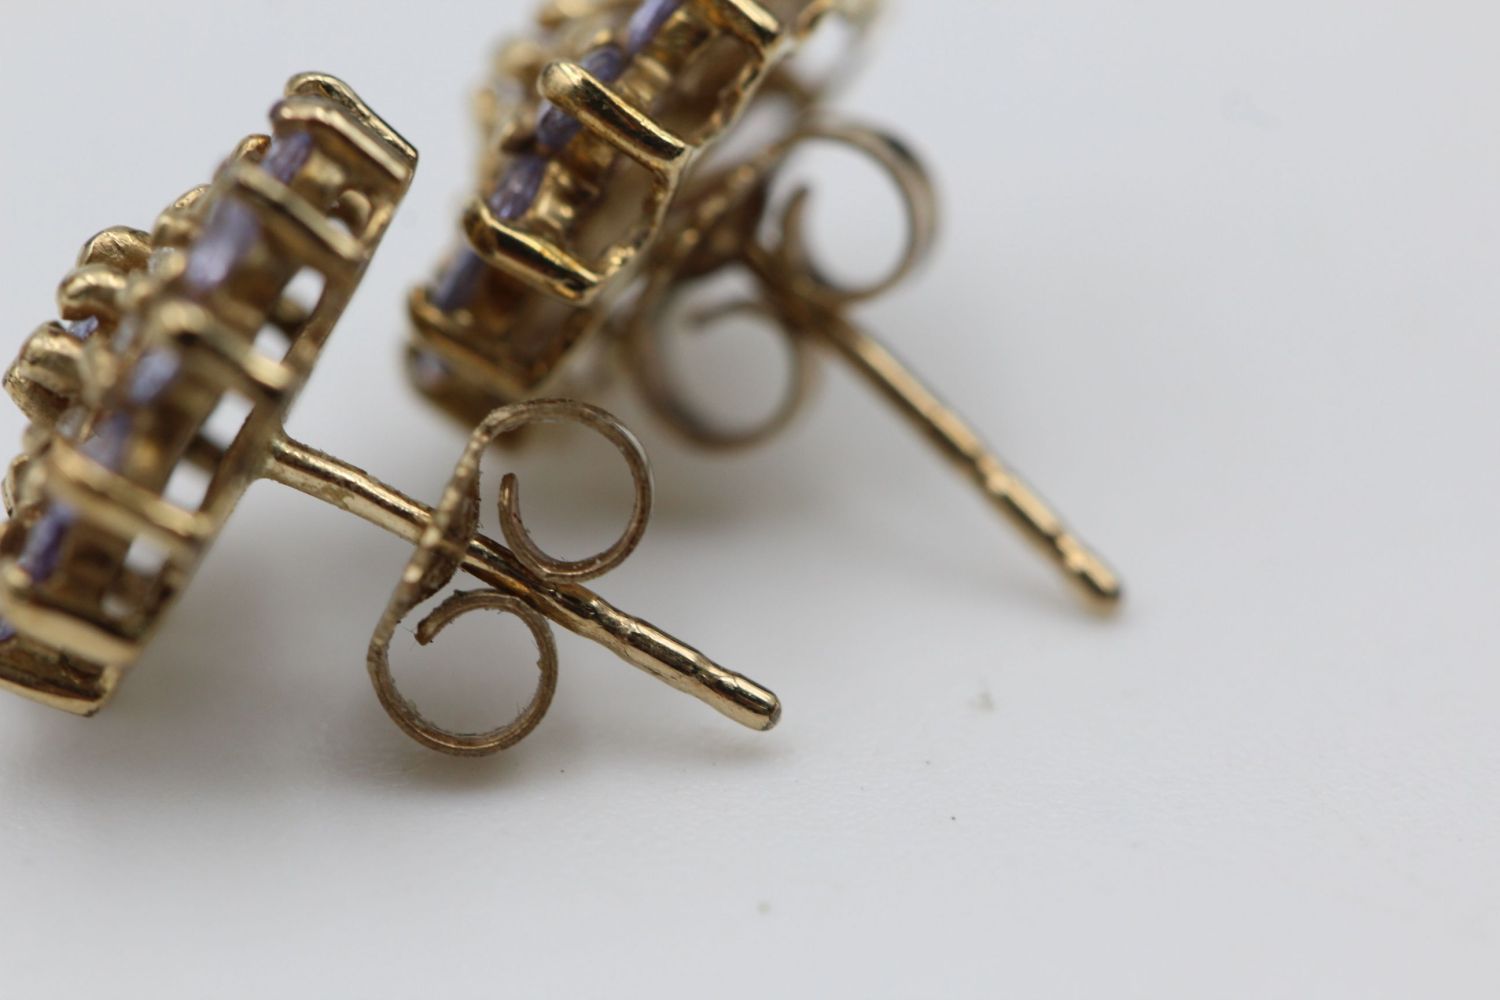 9ct gold diamond & lolite cluster earrings 2.3 grams gross - Image 2 of 4